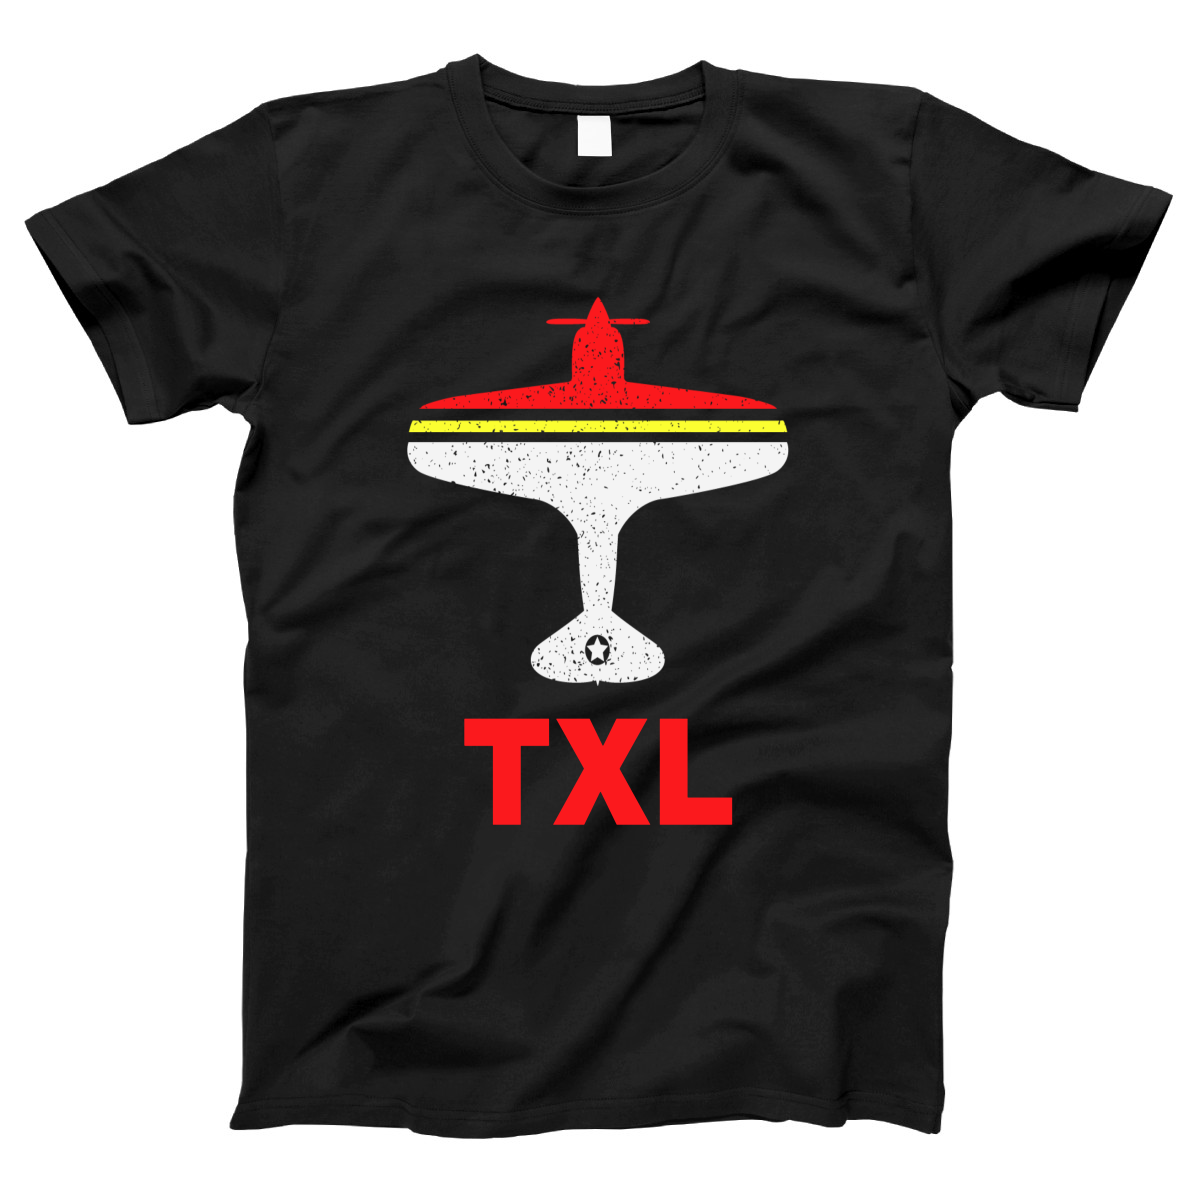 Fly Berlin TXL Airport  Women's T-shirt